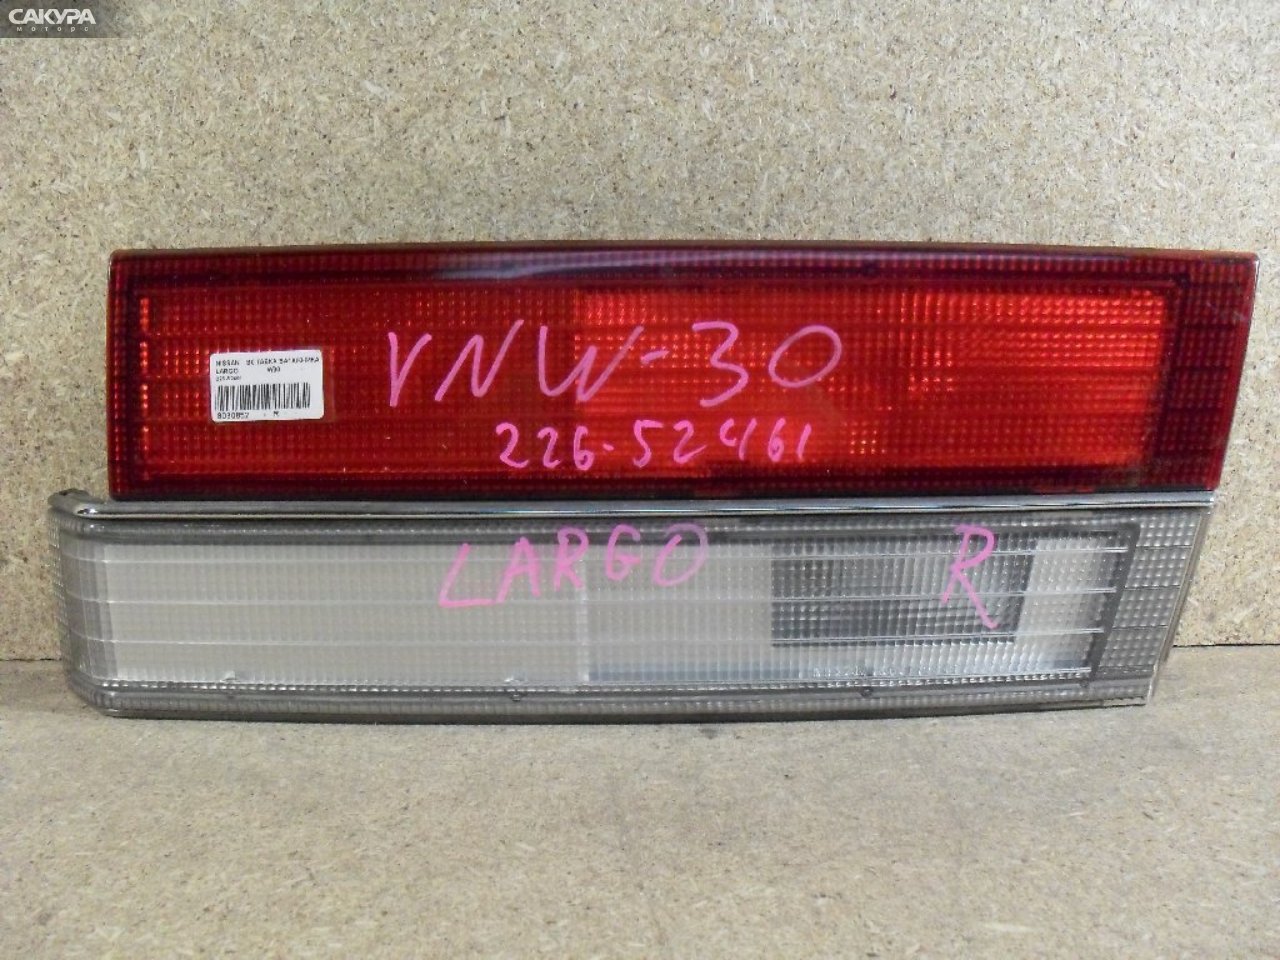 Фонарь вставка багажника правый Nissan Largo W30 226-52461: купить в Сакура Абакан.